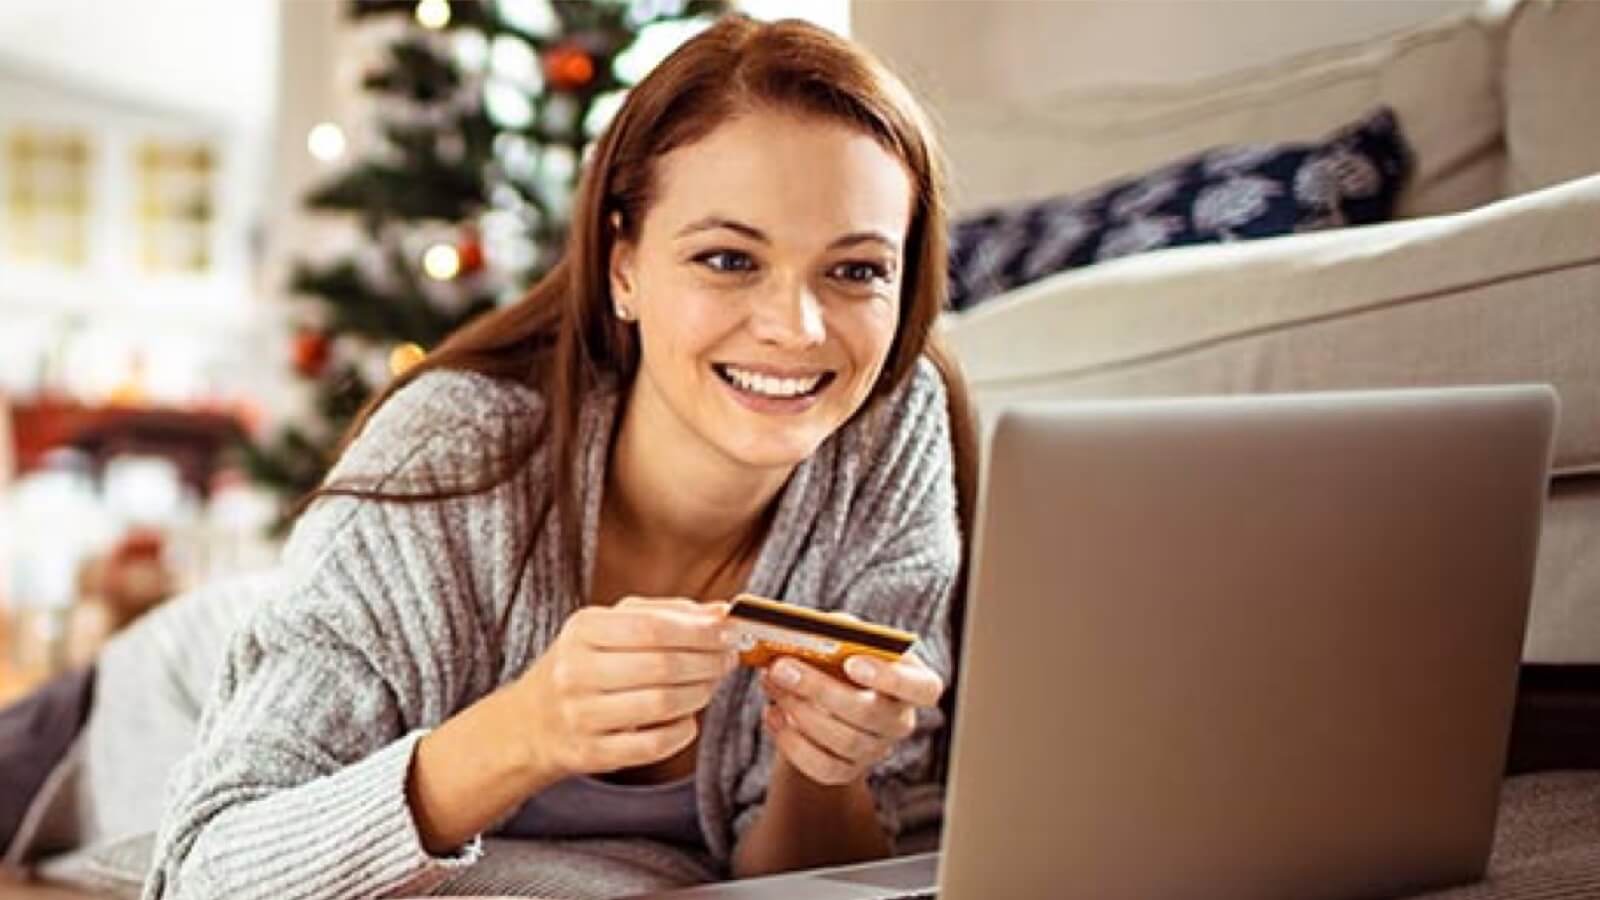 Imagem de uma mulher realizando compras online com um cartão de crédito em mãos